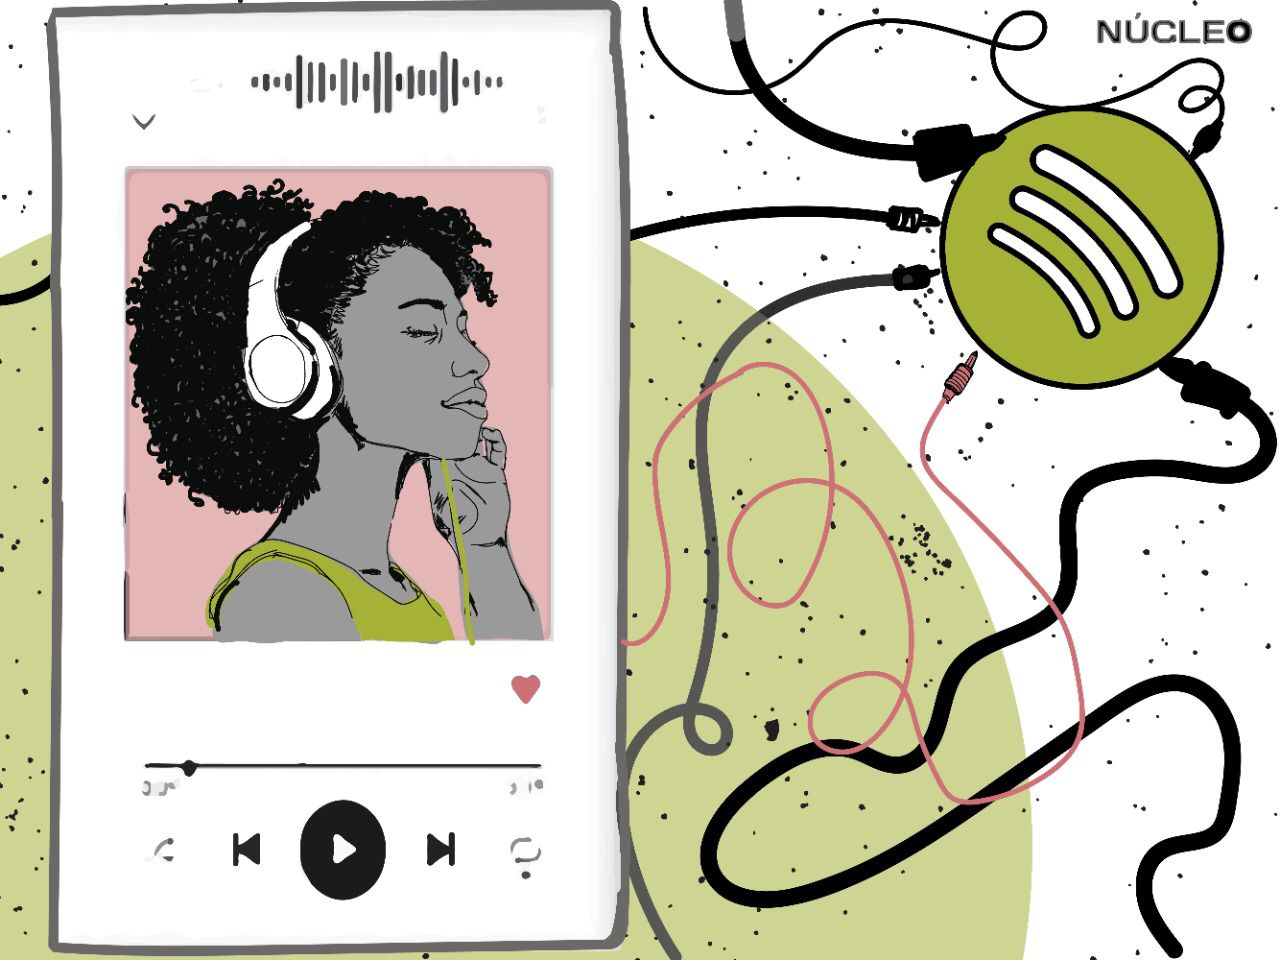 Spotify lança novos recursos para te fazer postar prints nas redes